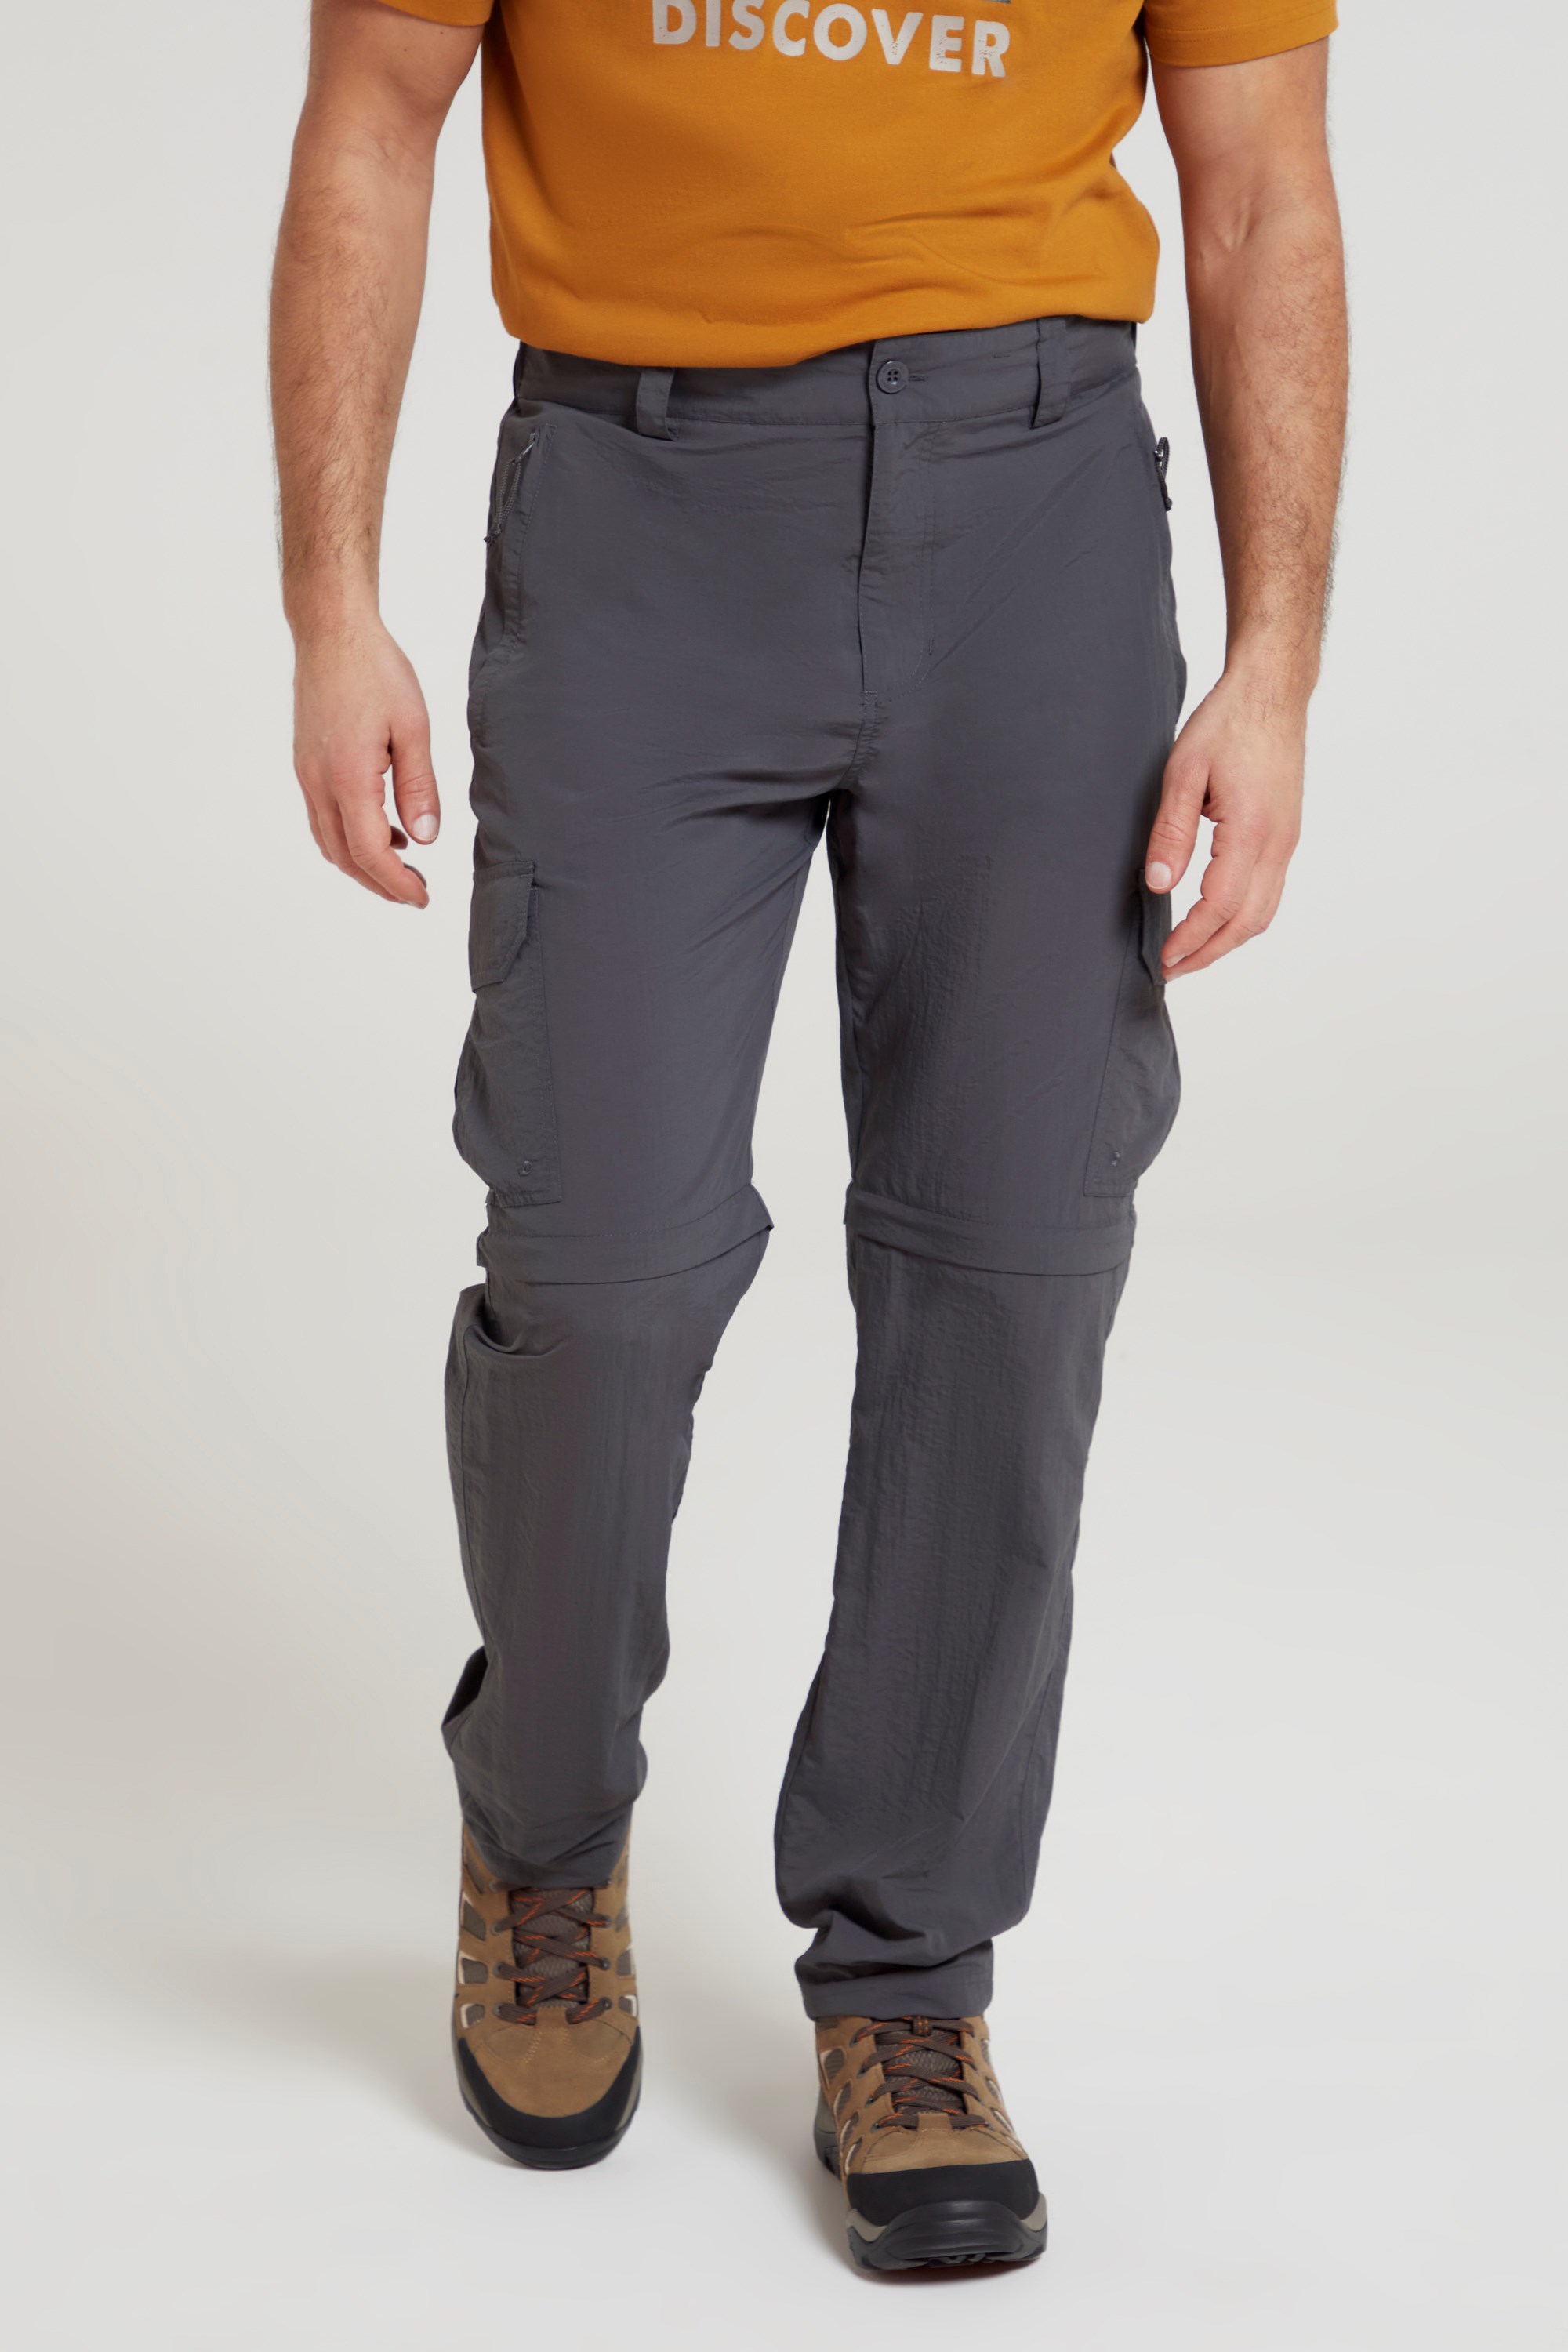 Men's Zip Off Pants, Convertible Pants